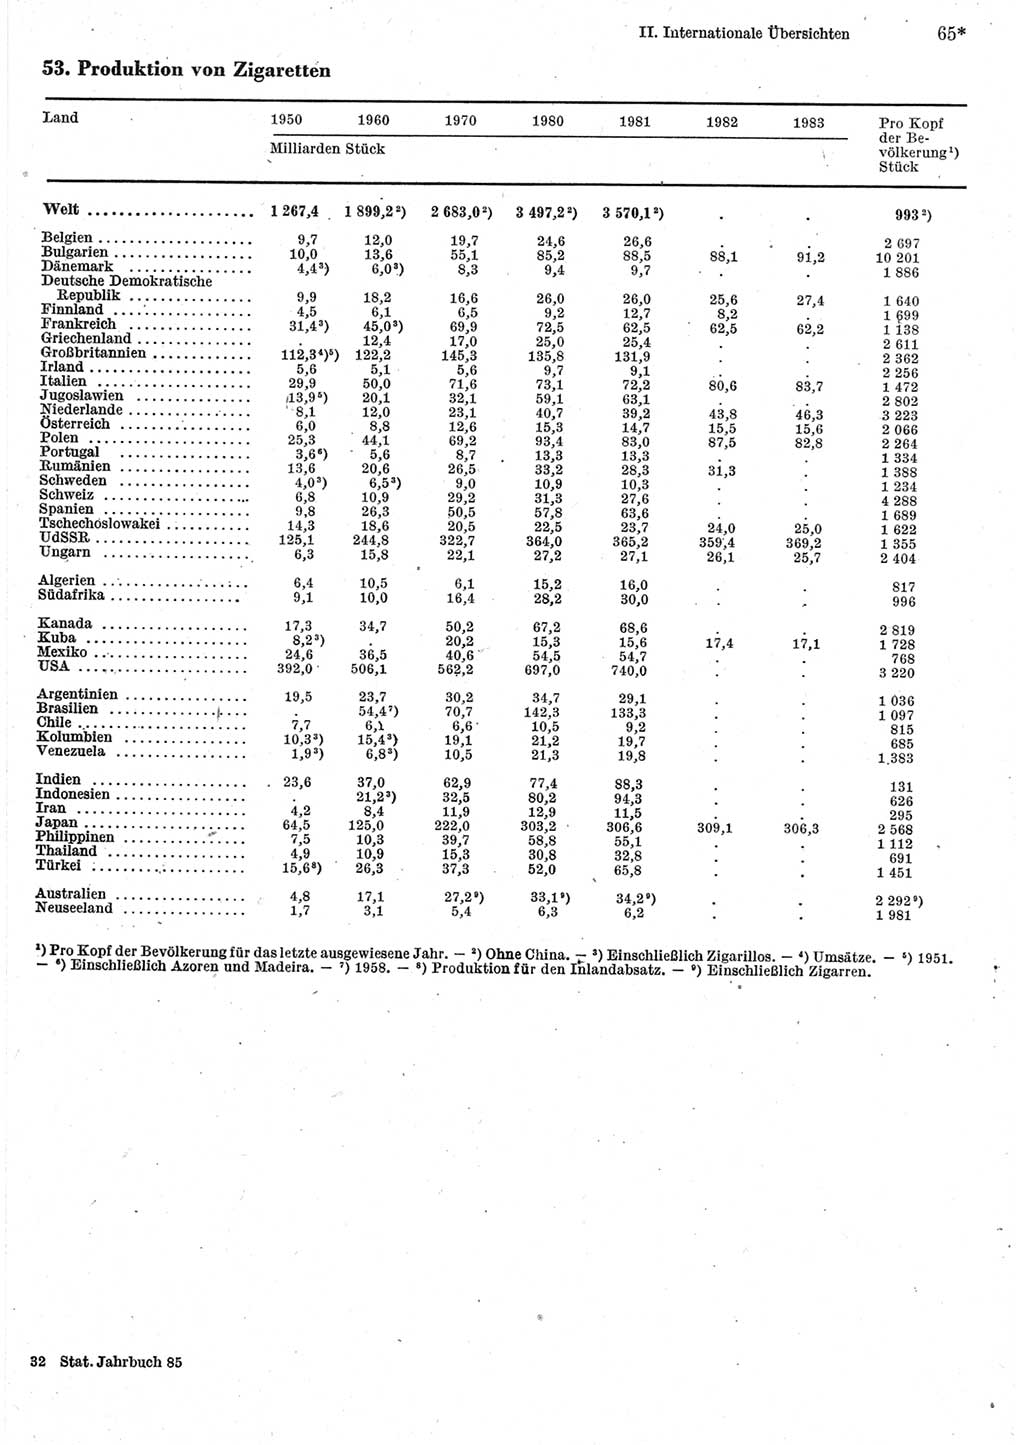 Statistisches Jahrbuch der Deutschen Demokratischen Republik (DDR) 1985, Seite 65 (Stat. Jb. DDR 1985, S. 65)